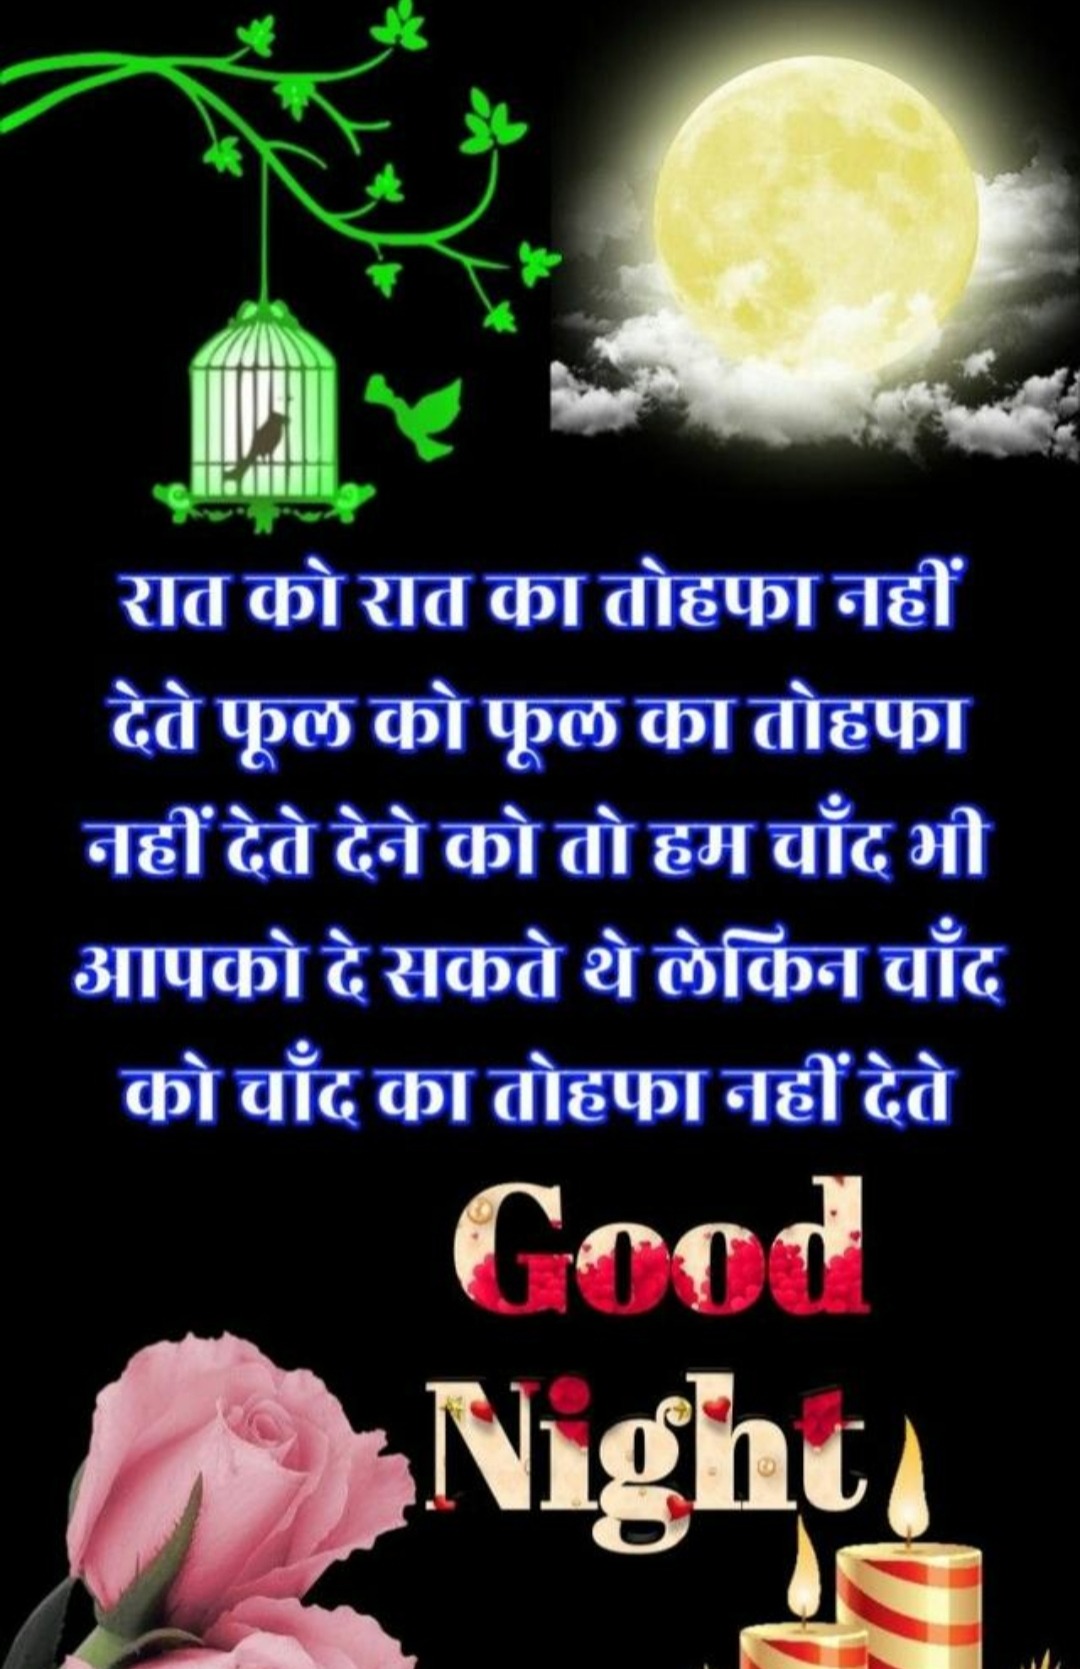 New Good Night Wallpaper With Shayari In Hindi Shayari Good Night Image